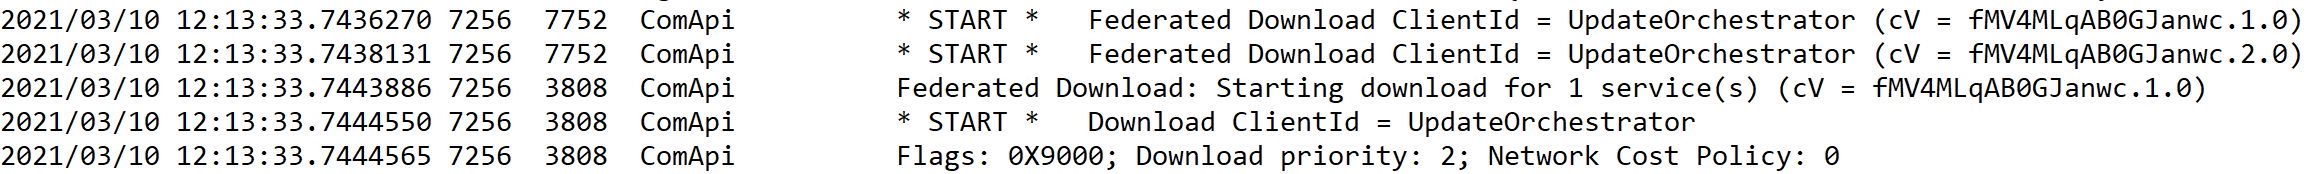 WindowsUpdate.log file